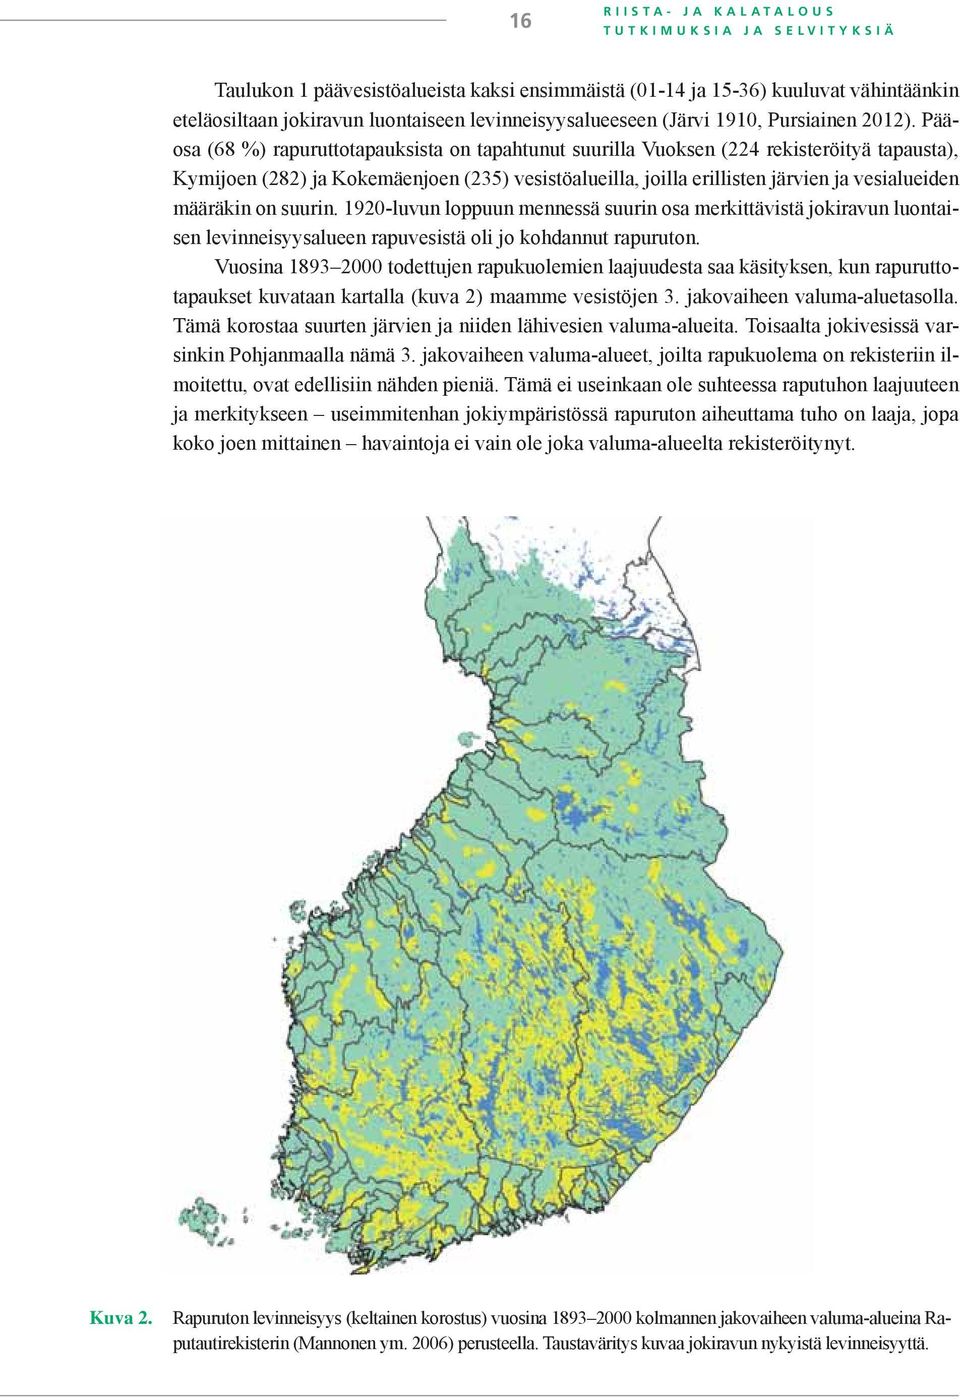 Pääosa (68 %) rapuruttotapauksista on tapahtunut suurilla Vuoksen (224 rekisteröityä tapausta), Kymijoen (282) ja Kokemäenjoen (235) vesistöalueilla, joilla erillisten järvien ja vesialueiden